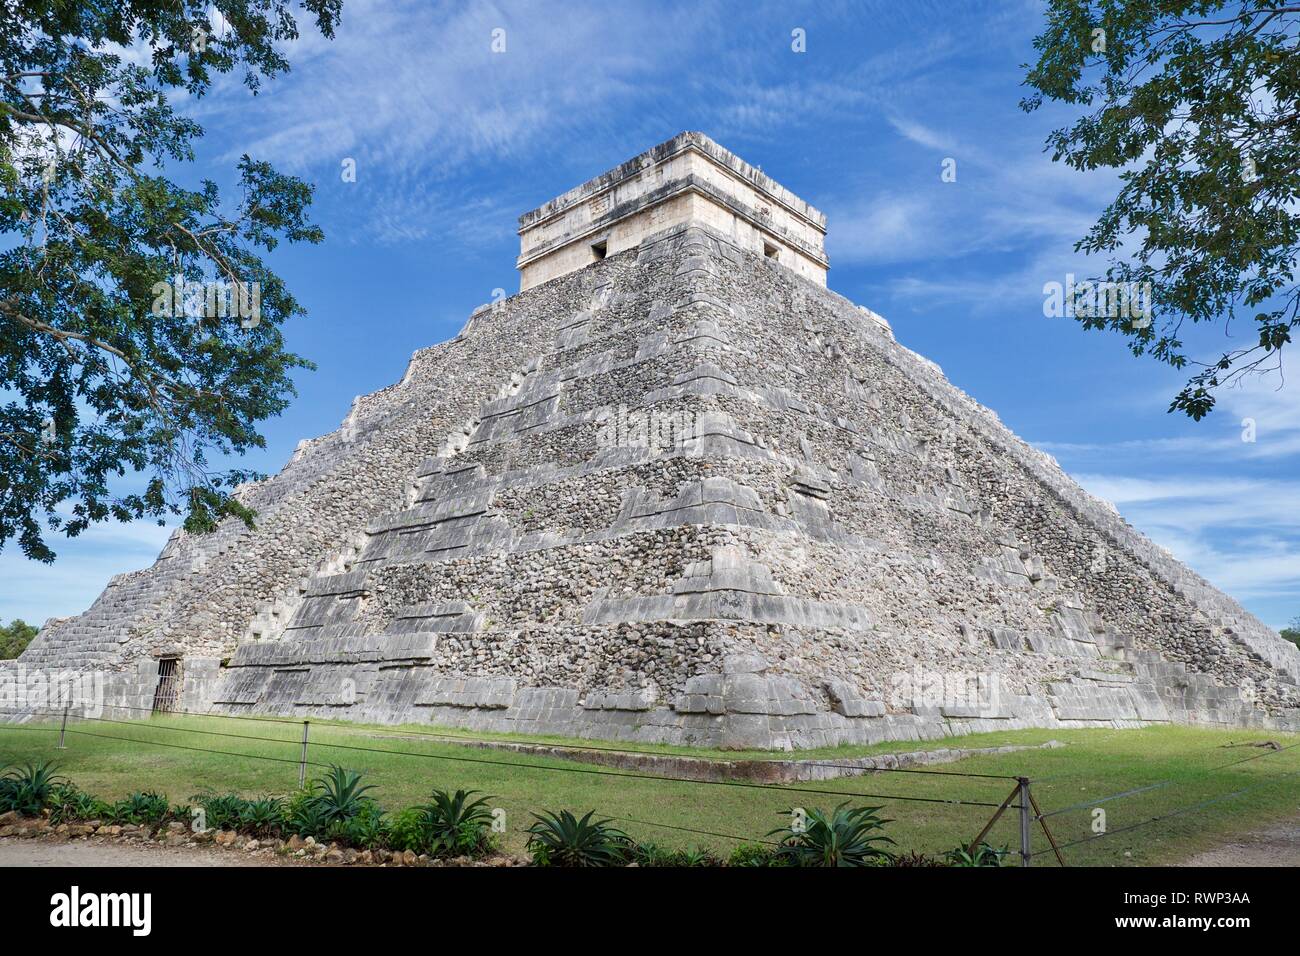 Piramide del mago in Uxmal rovine di antiche città maya, Yucatan Messico Foto Stock